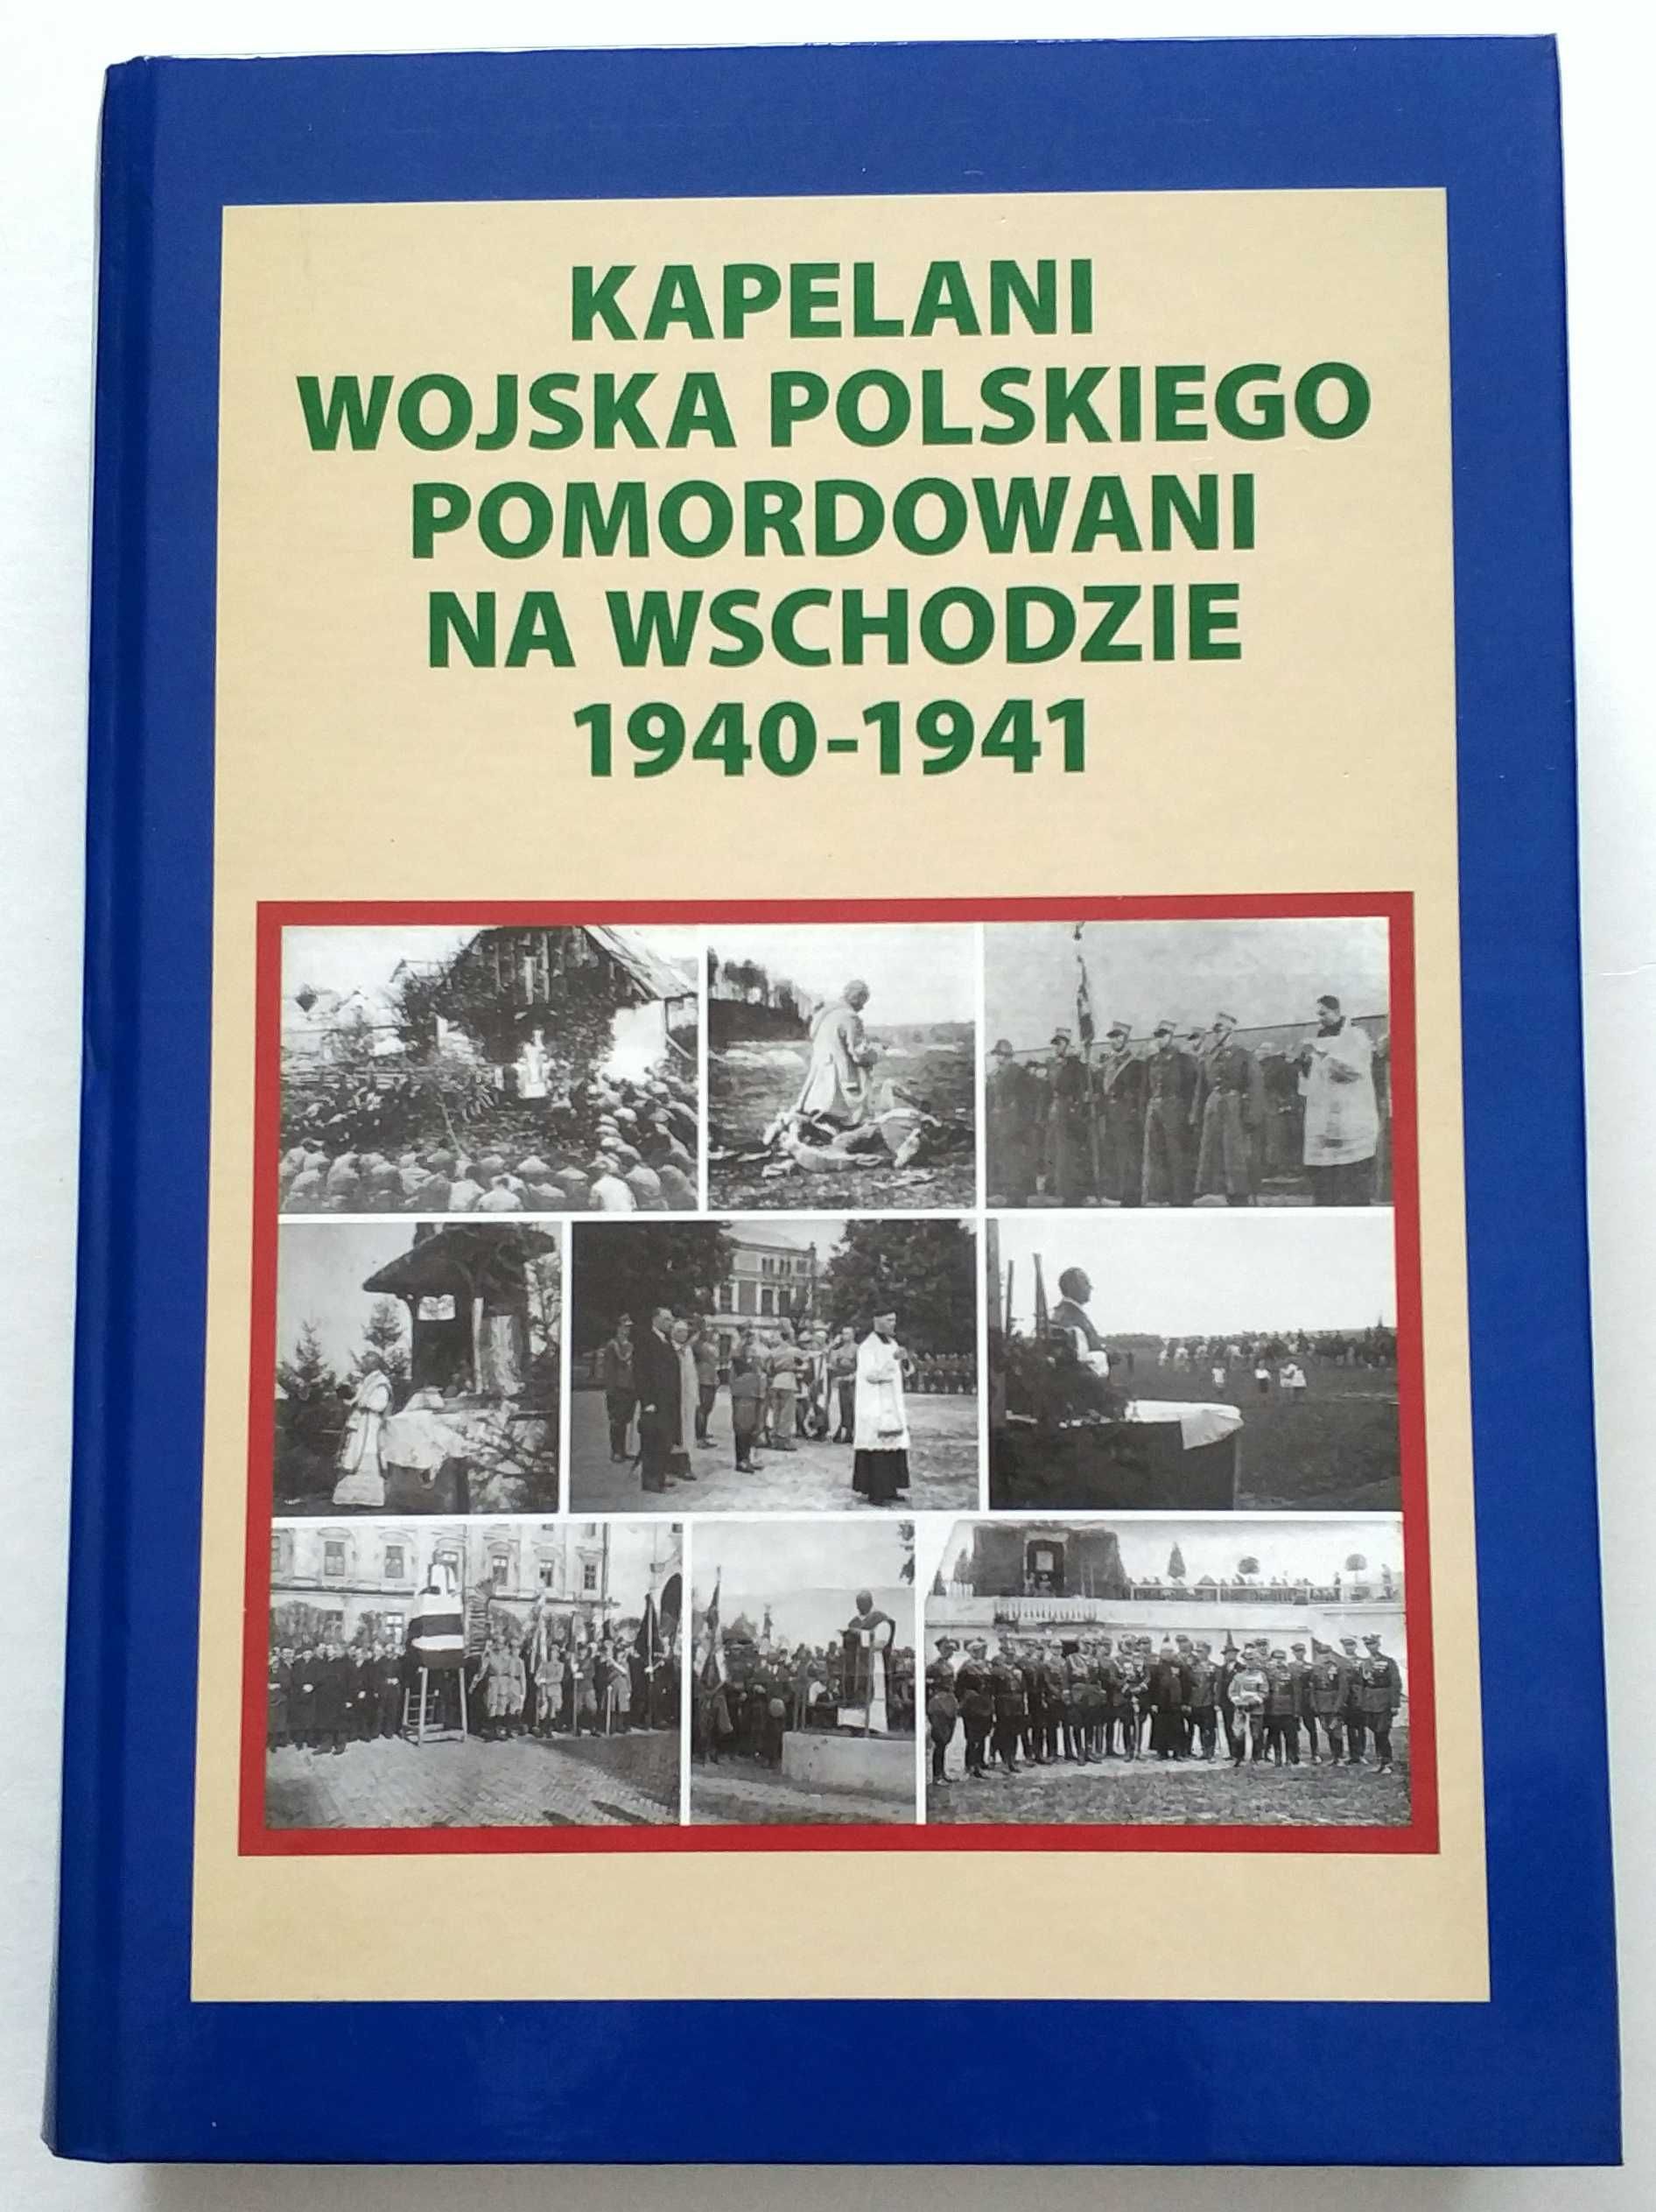 Kapelani Wojska Polskiego pomordowani na Wschodzie + SUPLEMENT